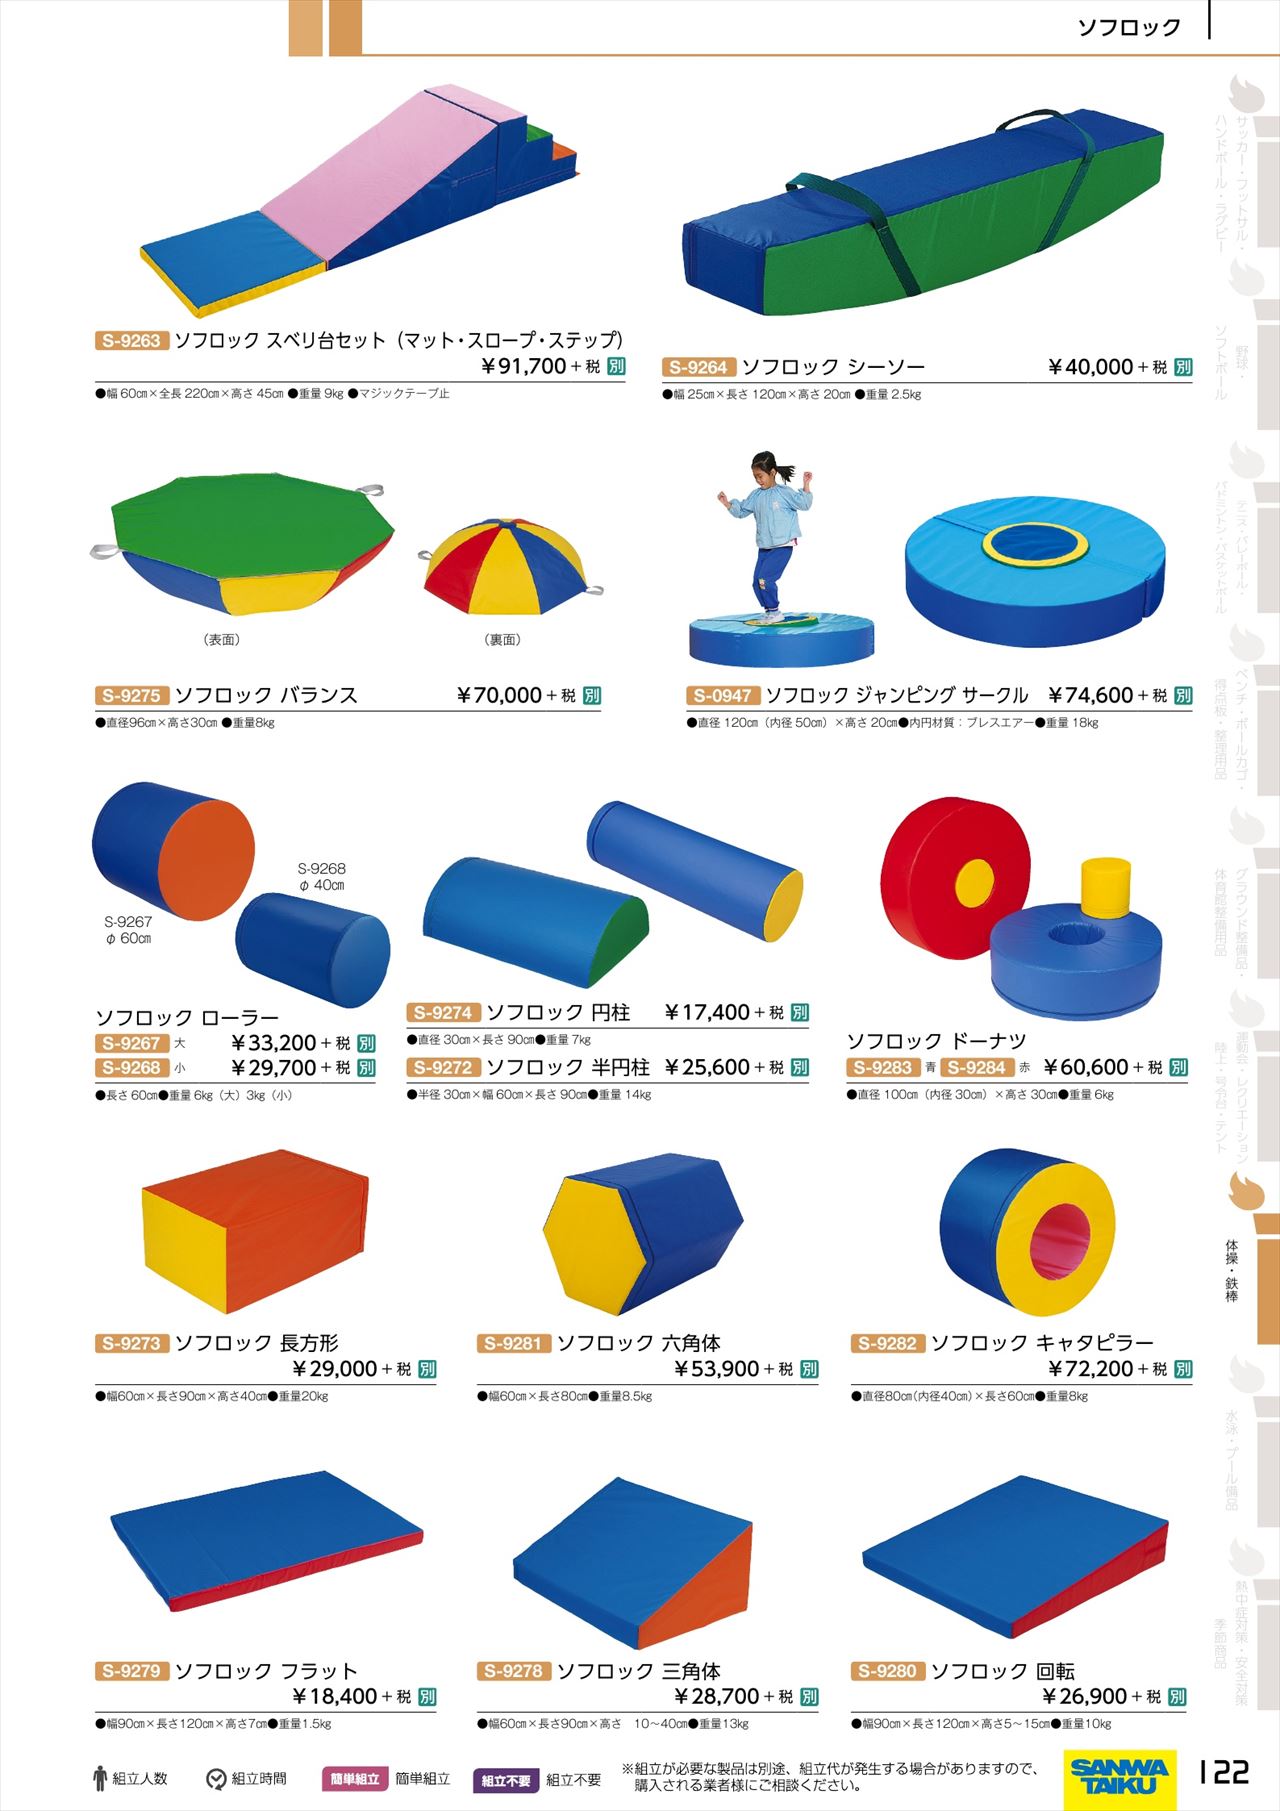 ブロックマットは、三和体育2020カタログ の ページ122 に掲載されてい 